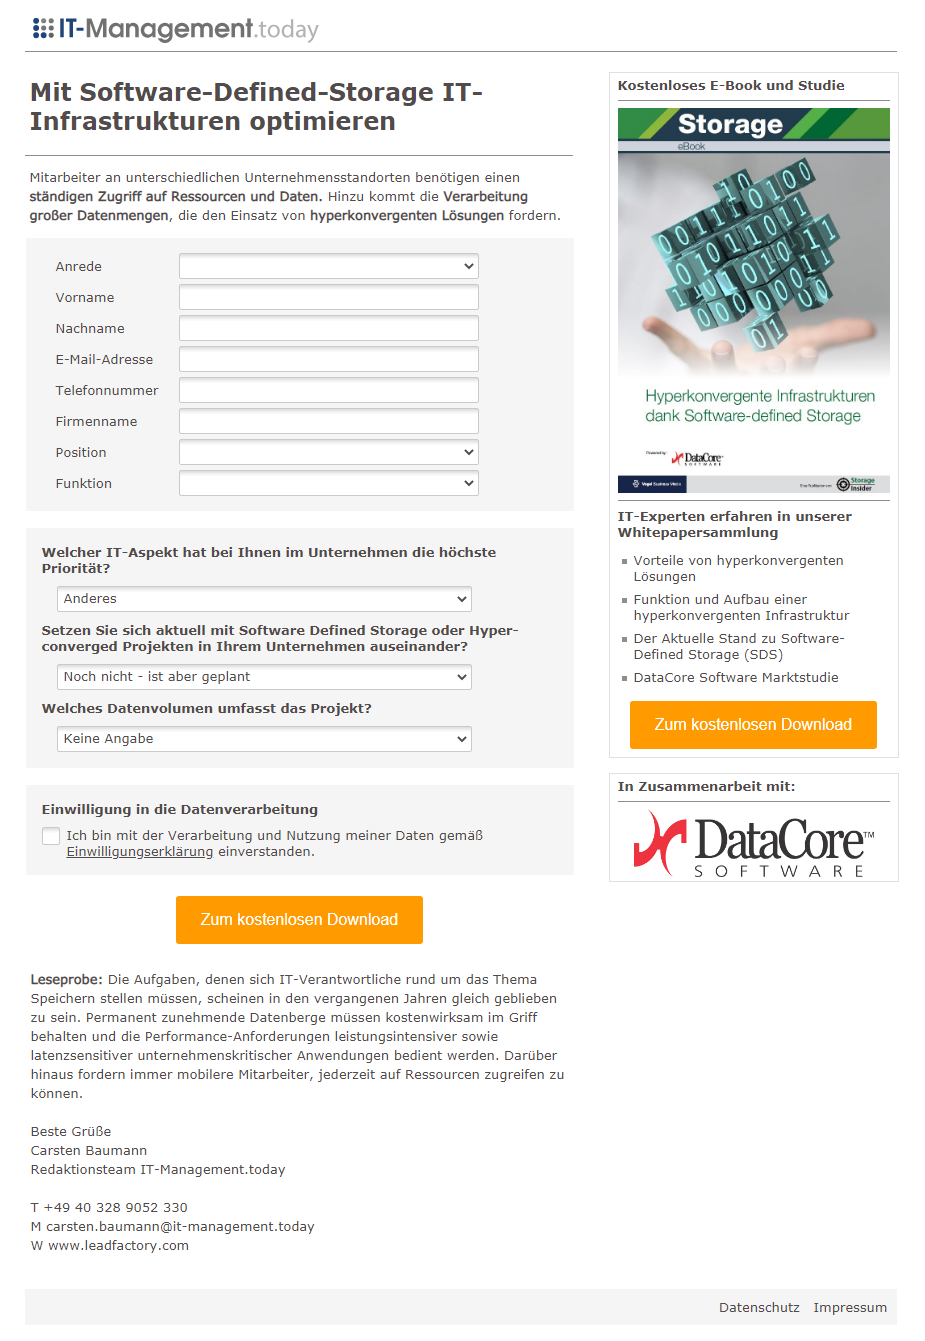 Referenzkampagne_DataCore_Mit Software-Defined-Storage IT-Infrastrukturen optimieren